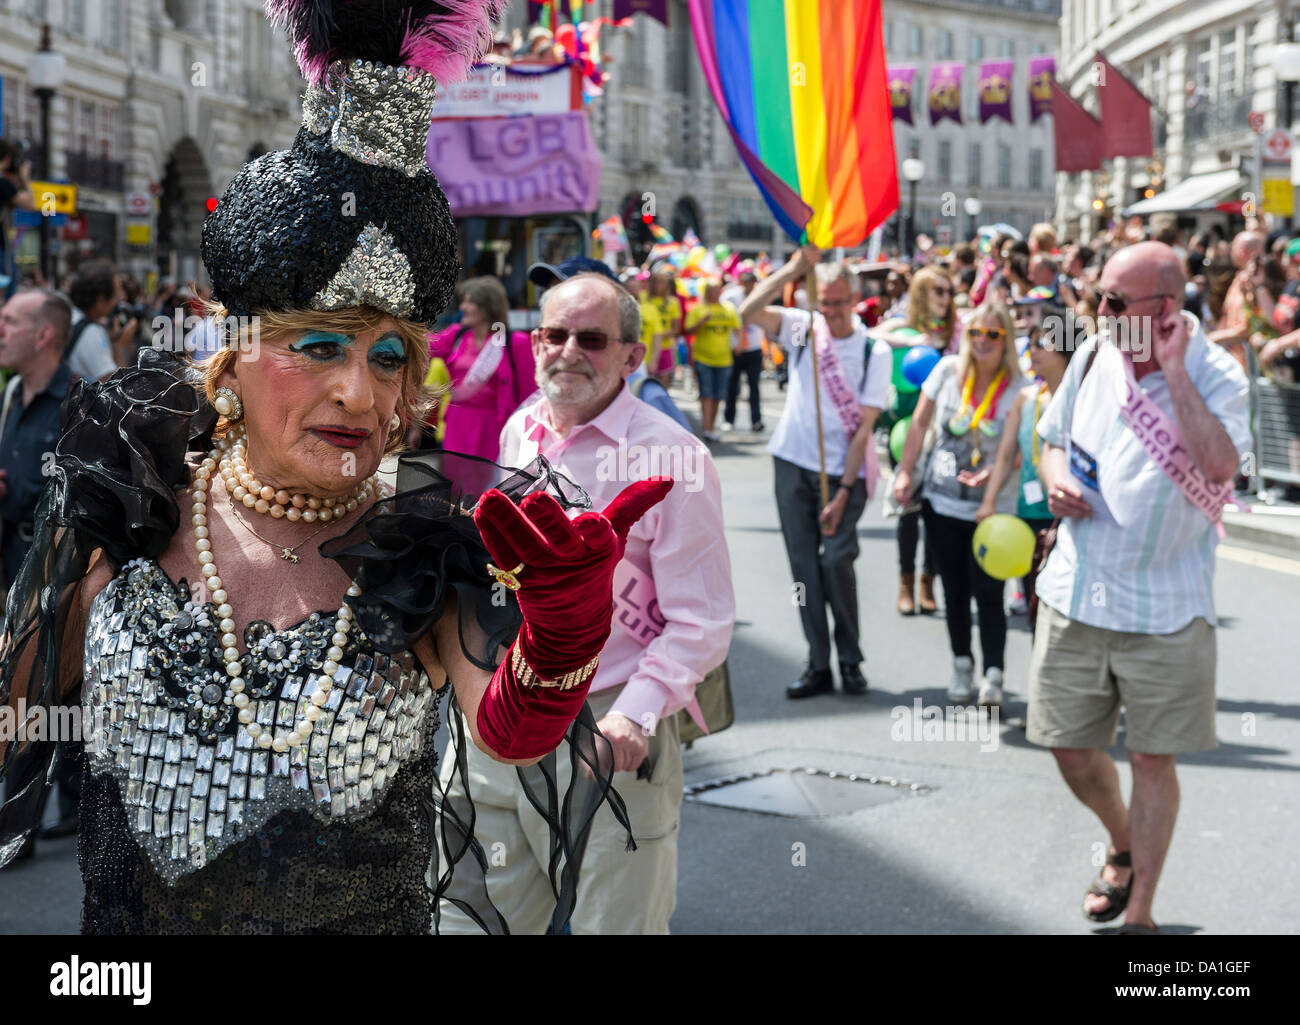 Un travesti personnes âgées participant à la London Pride Parade. Banque D'Images